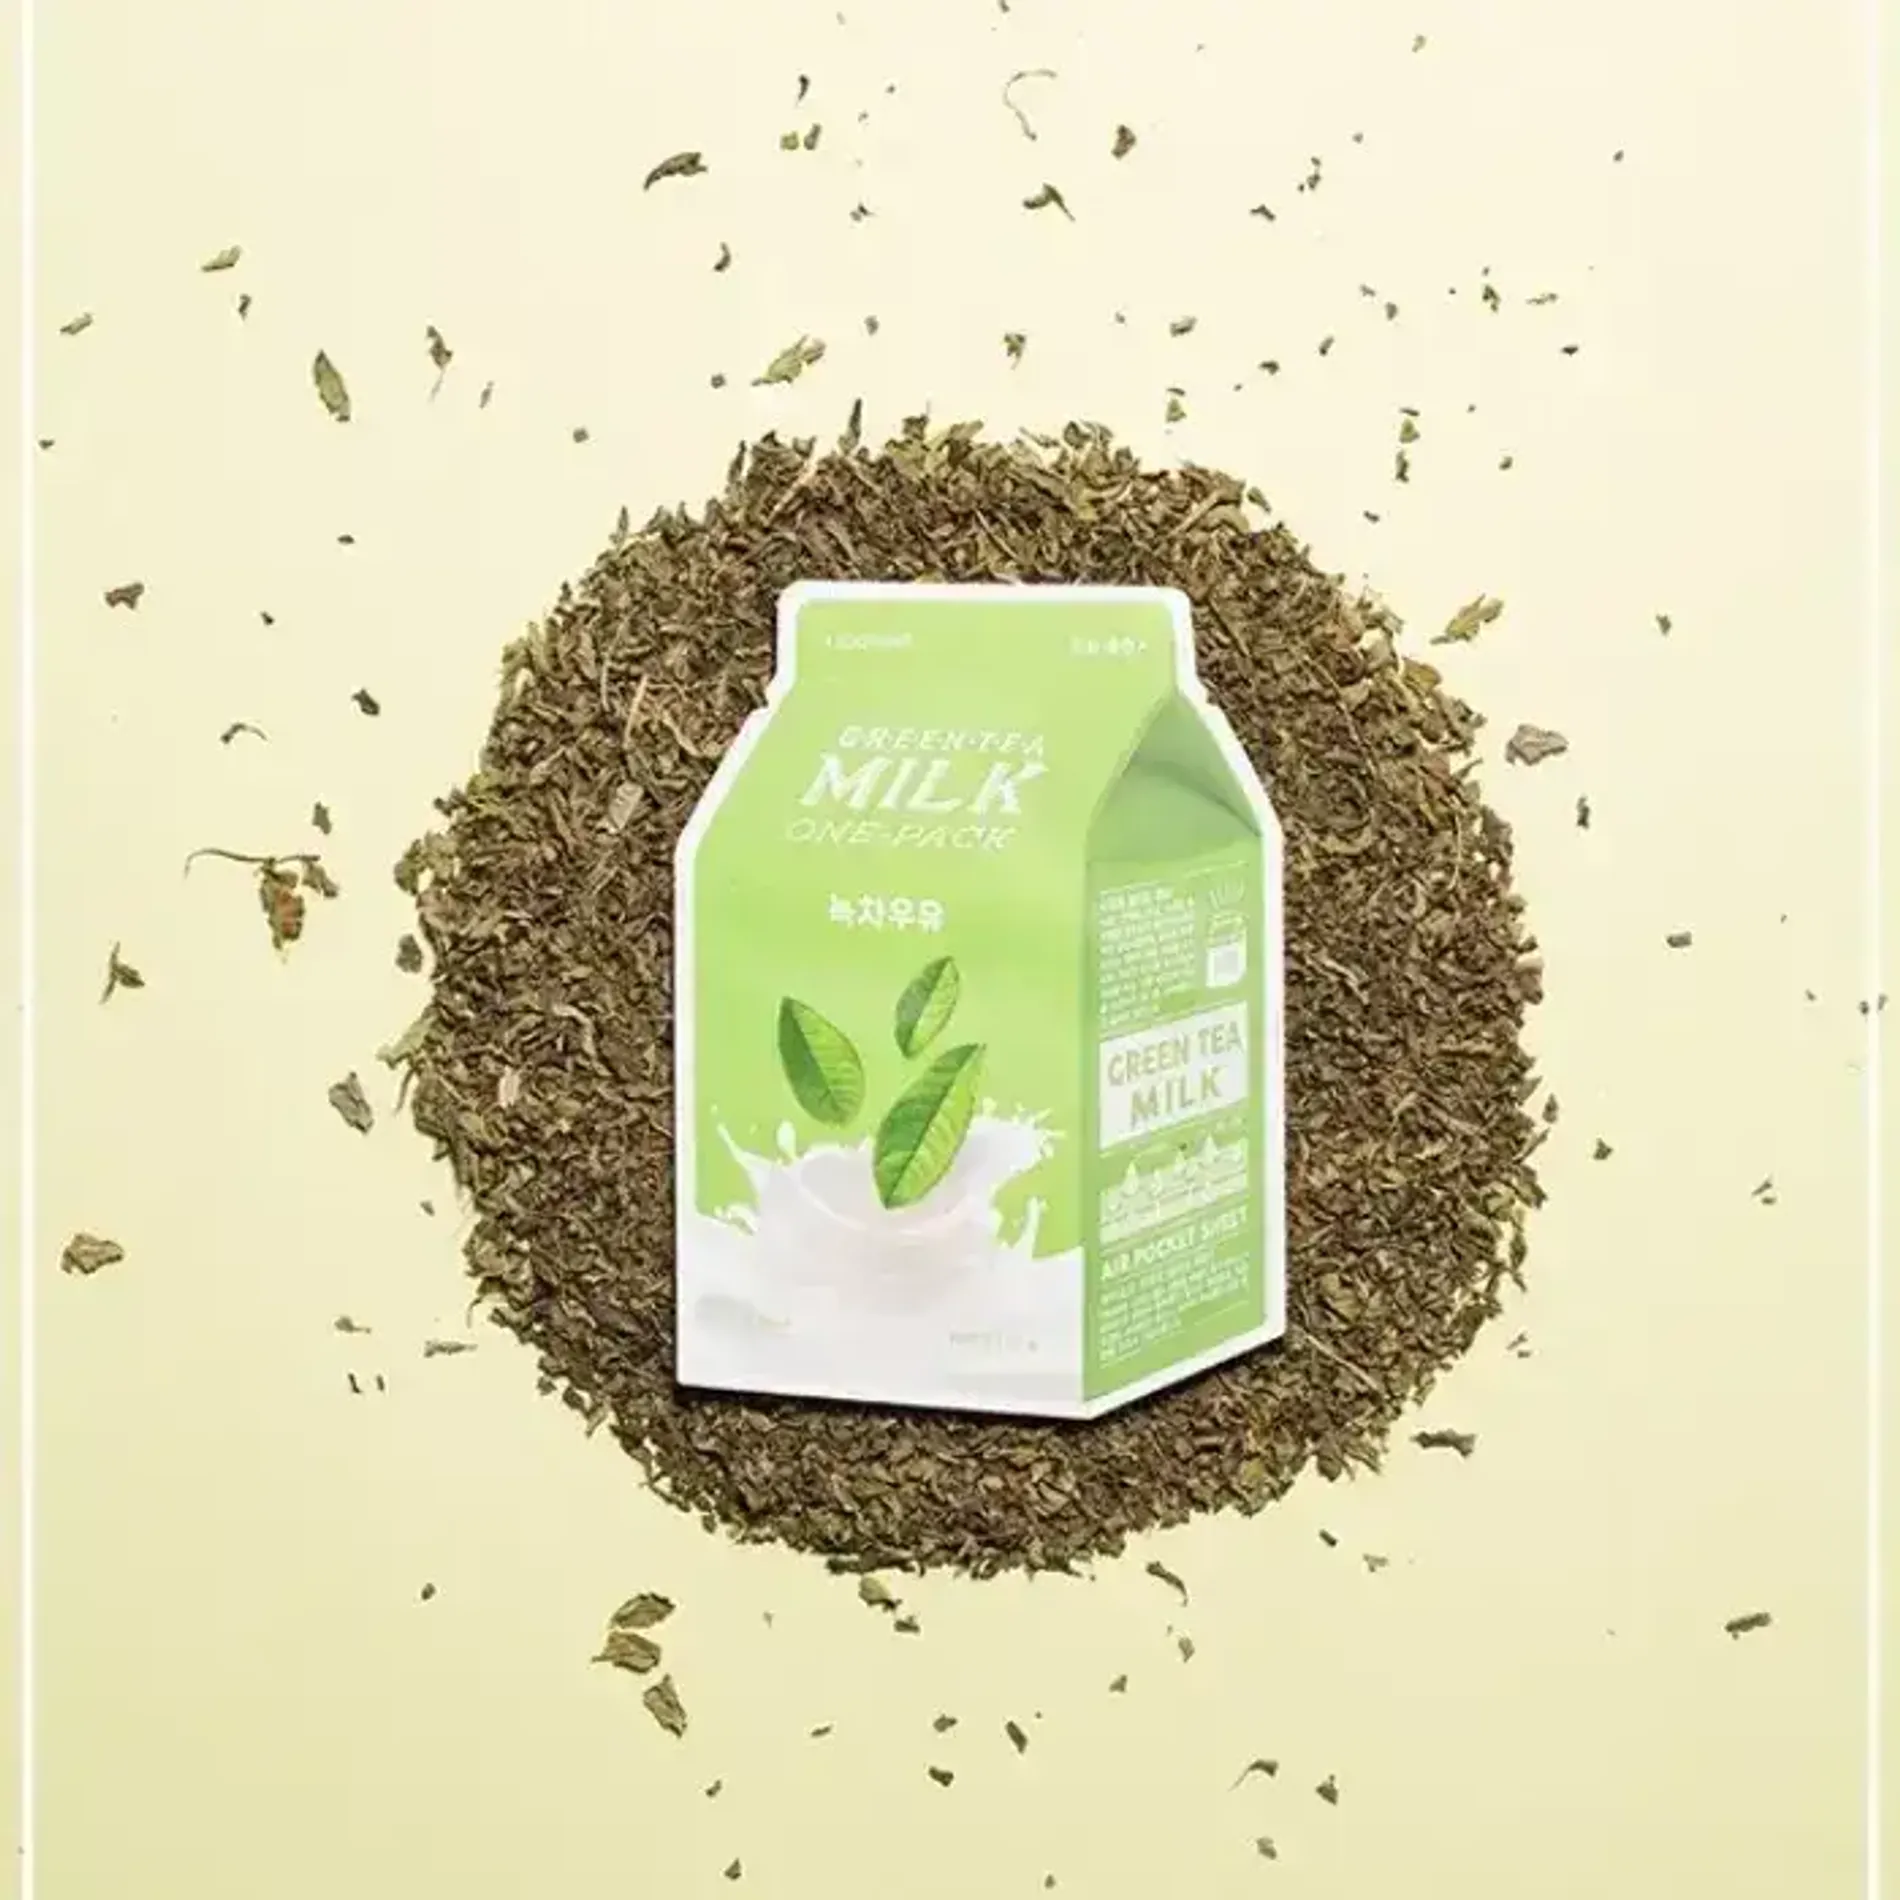 mat-na-lam-diu-da-a-pieu-green-tea-milk-one-pack-4